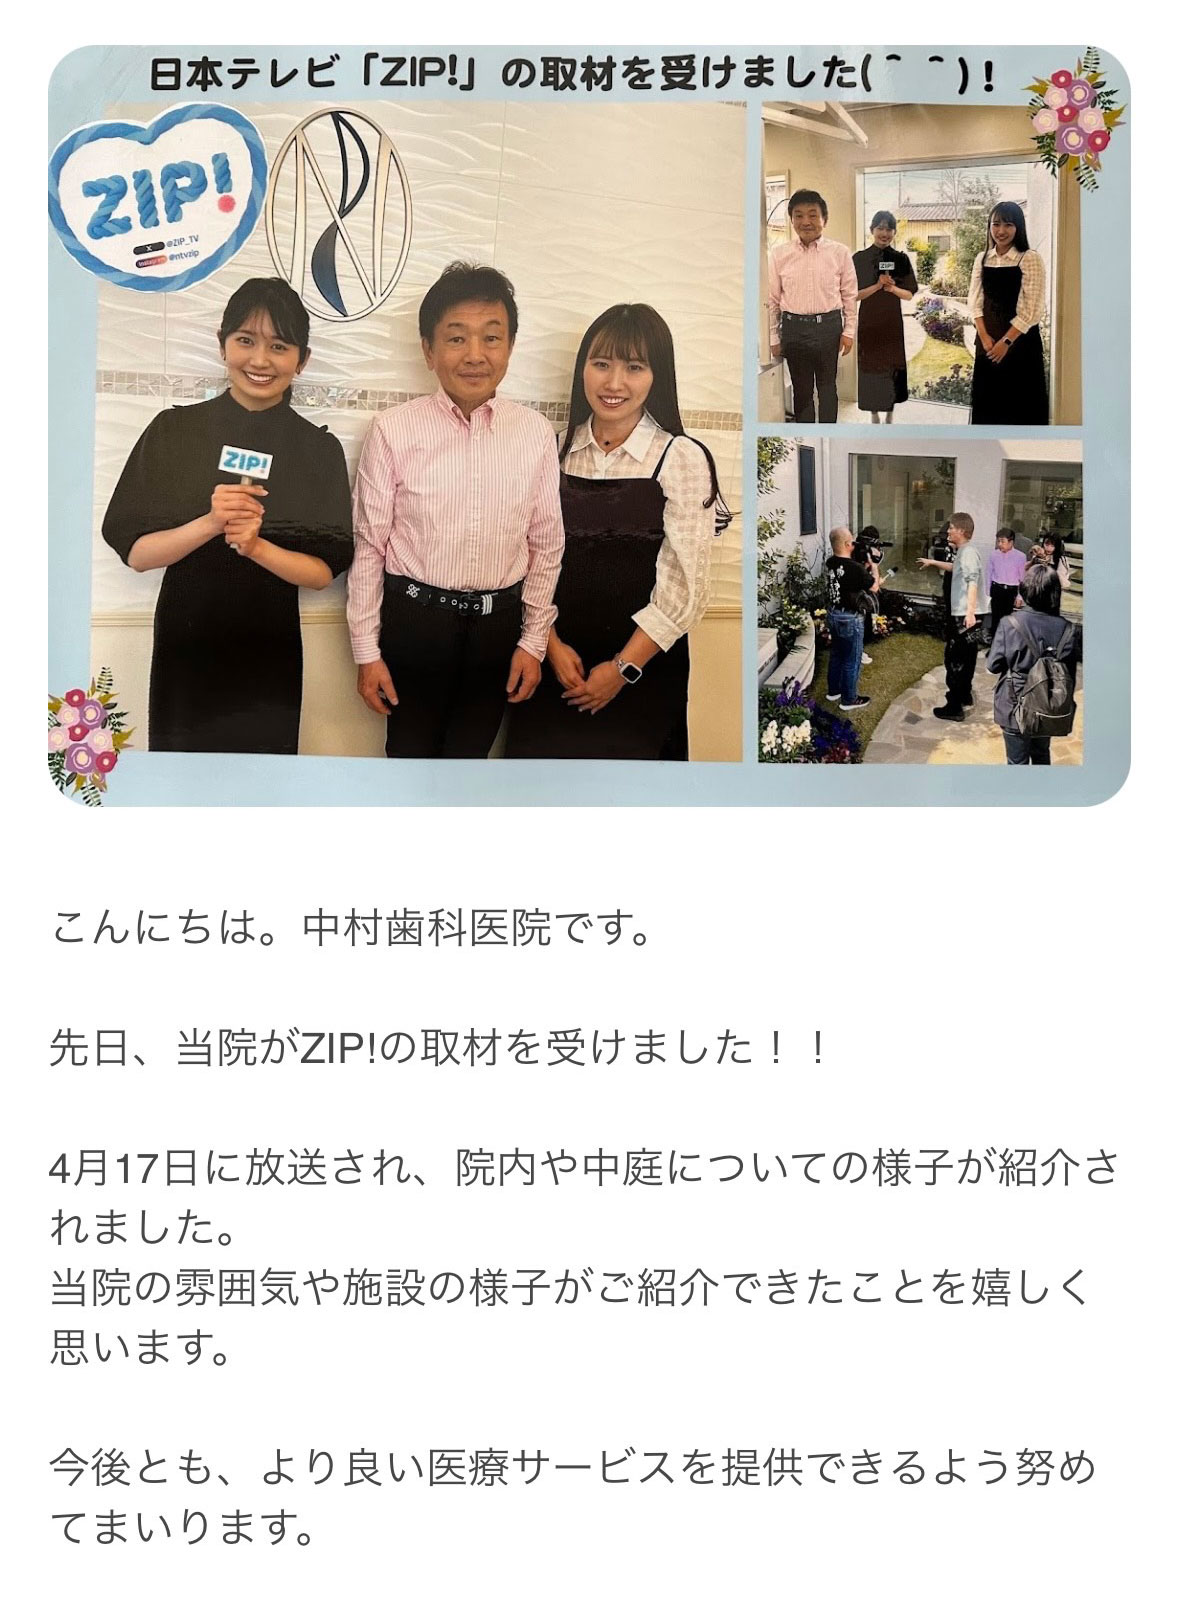 日本テレビ「ZIP!」の取材を受けました。